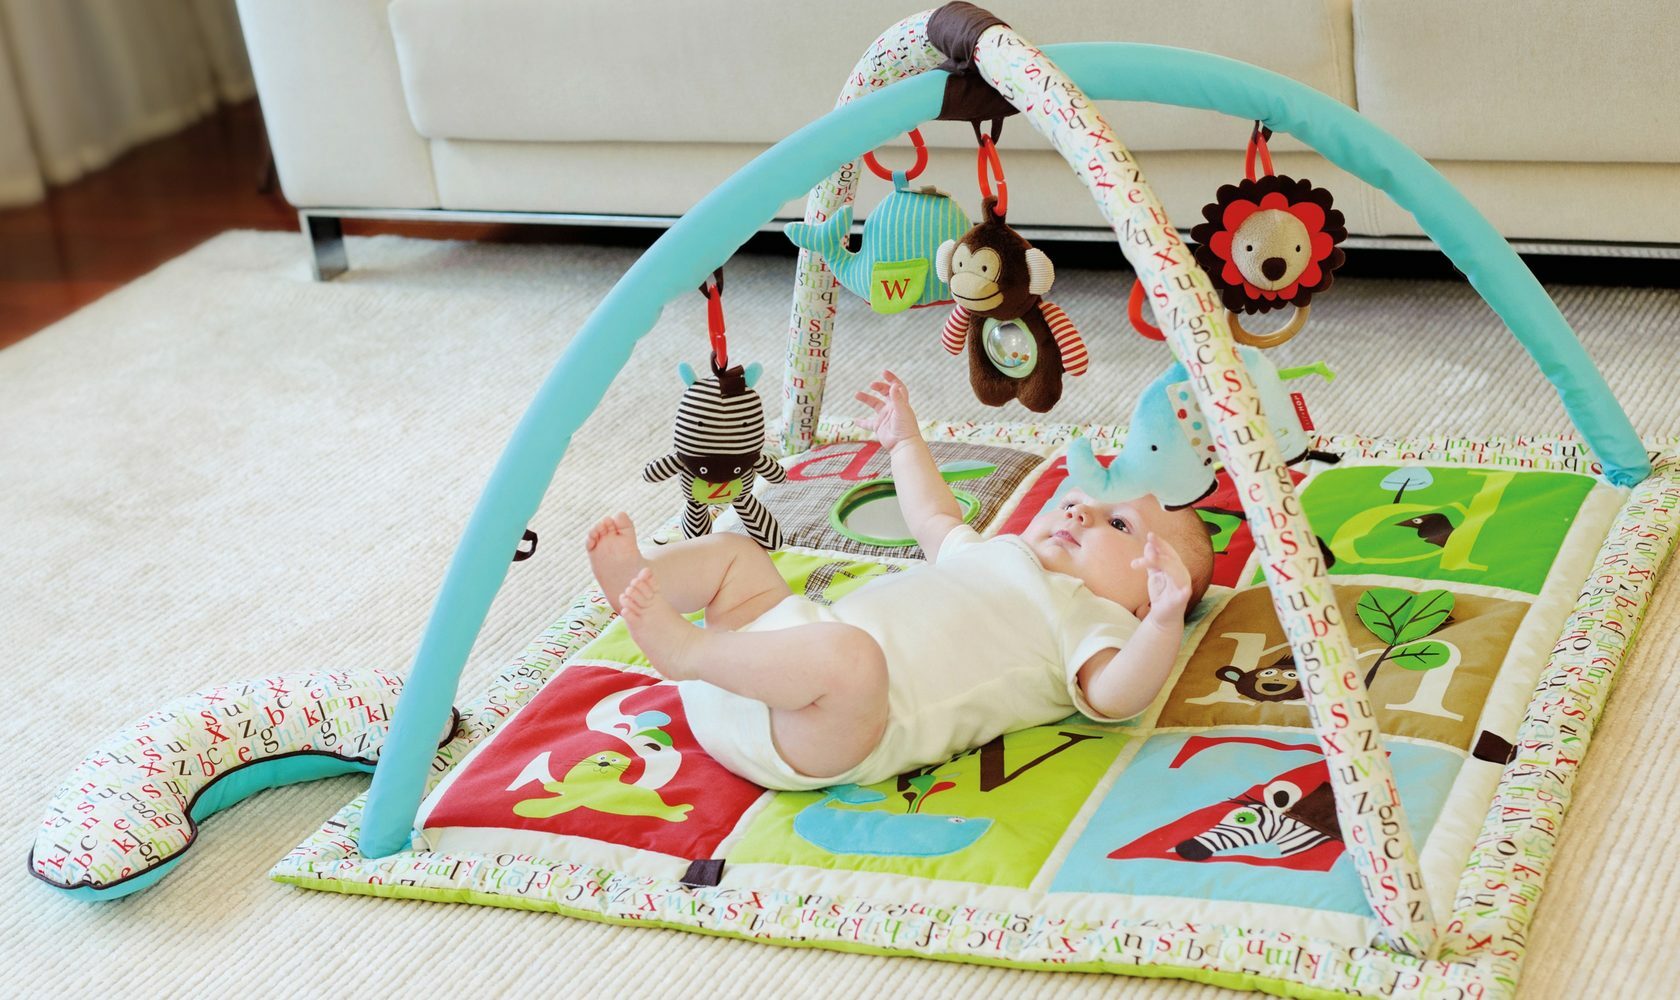 Развивающий коврик своими руками:) — 2 ответов | форум Babyblog